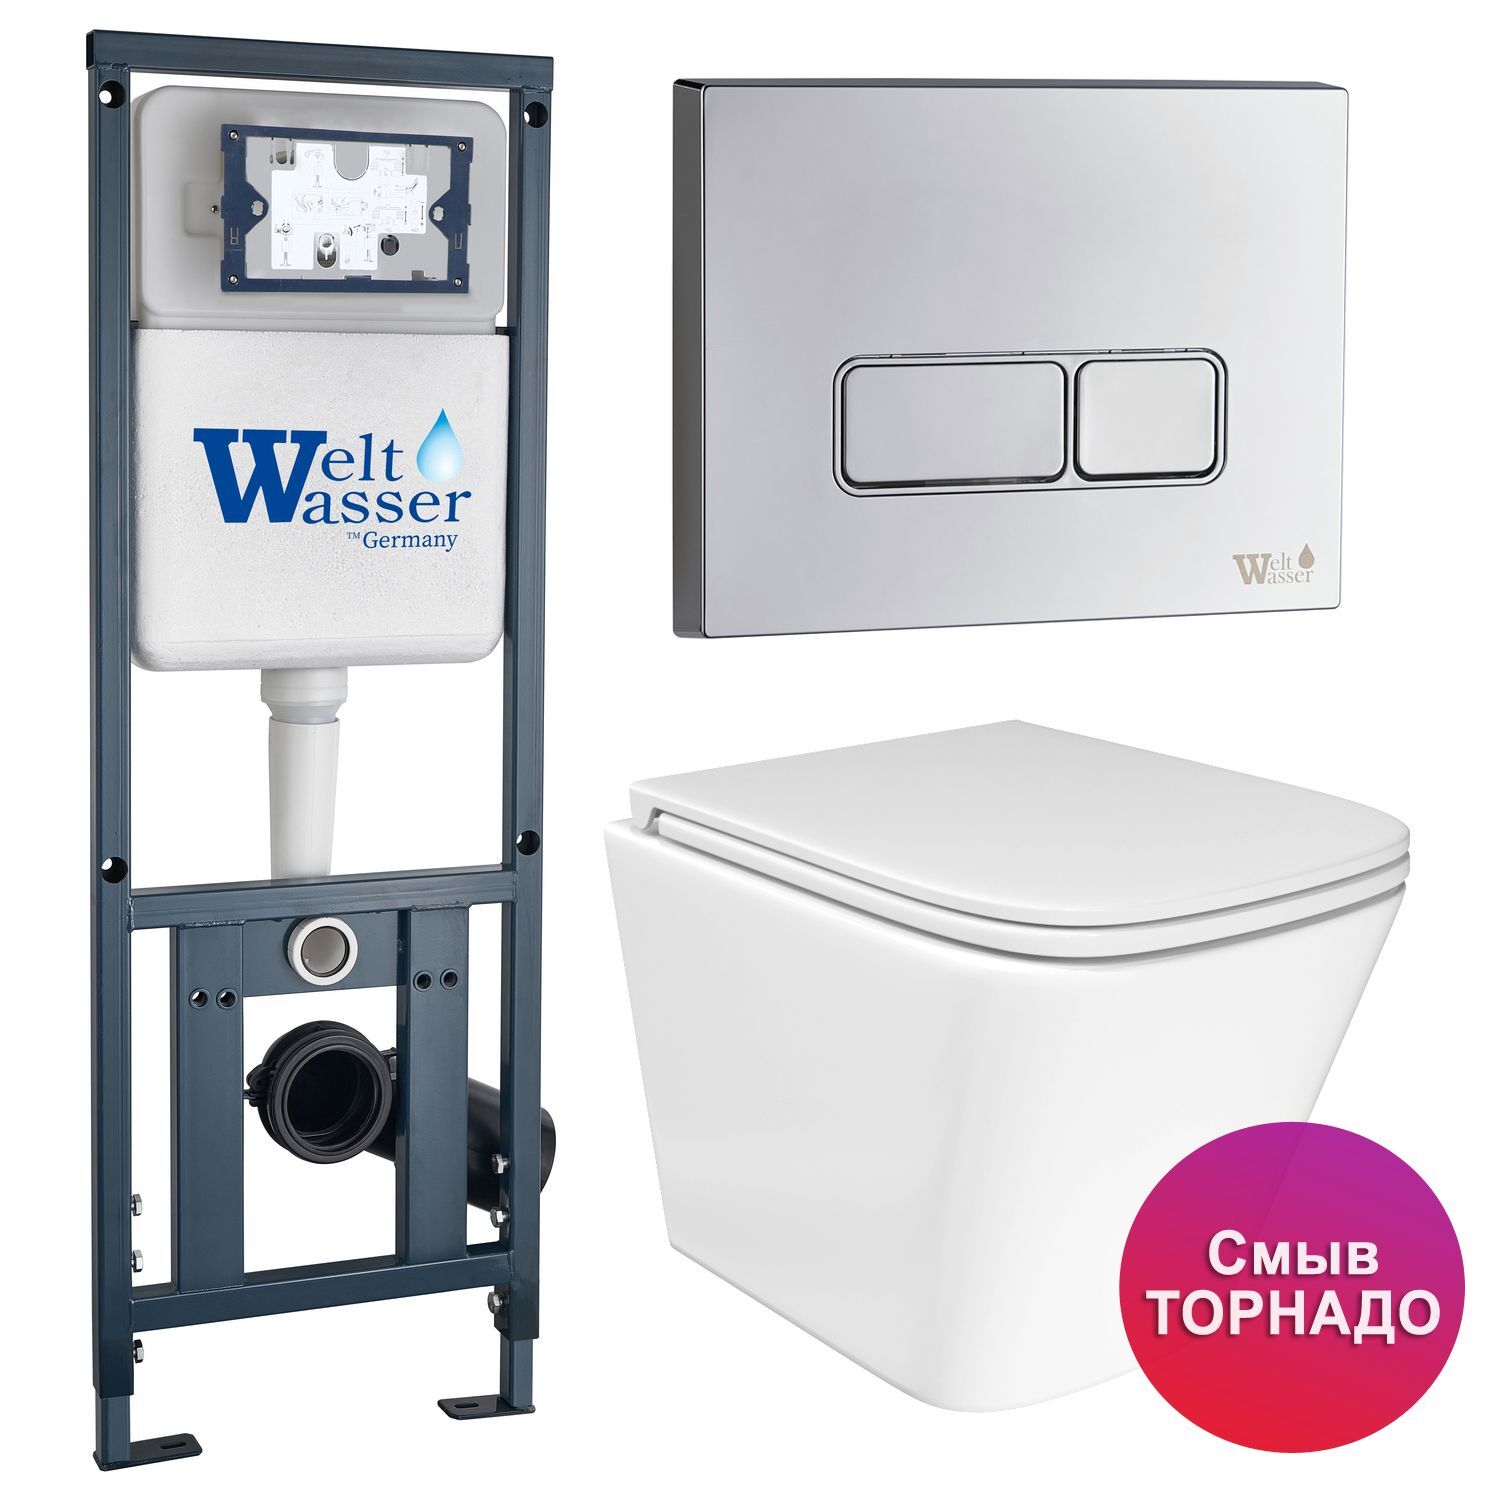 Комплект: Weltwasser Инсталляция Mar 410+Кнопка Mar 410 SE CR хром+Verna T JK3031025 белый унитаз, смыв Торнадо